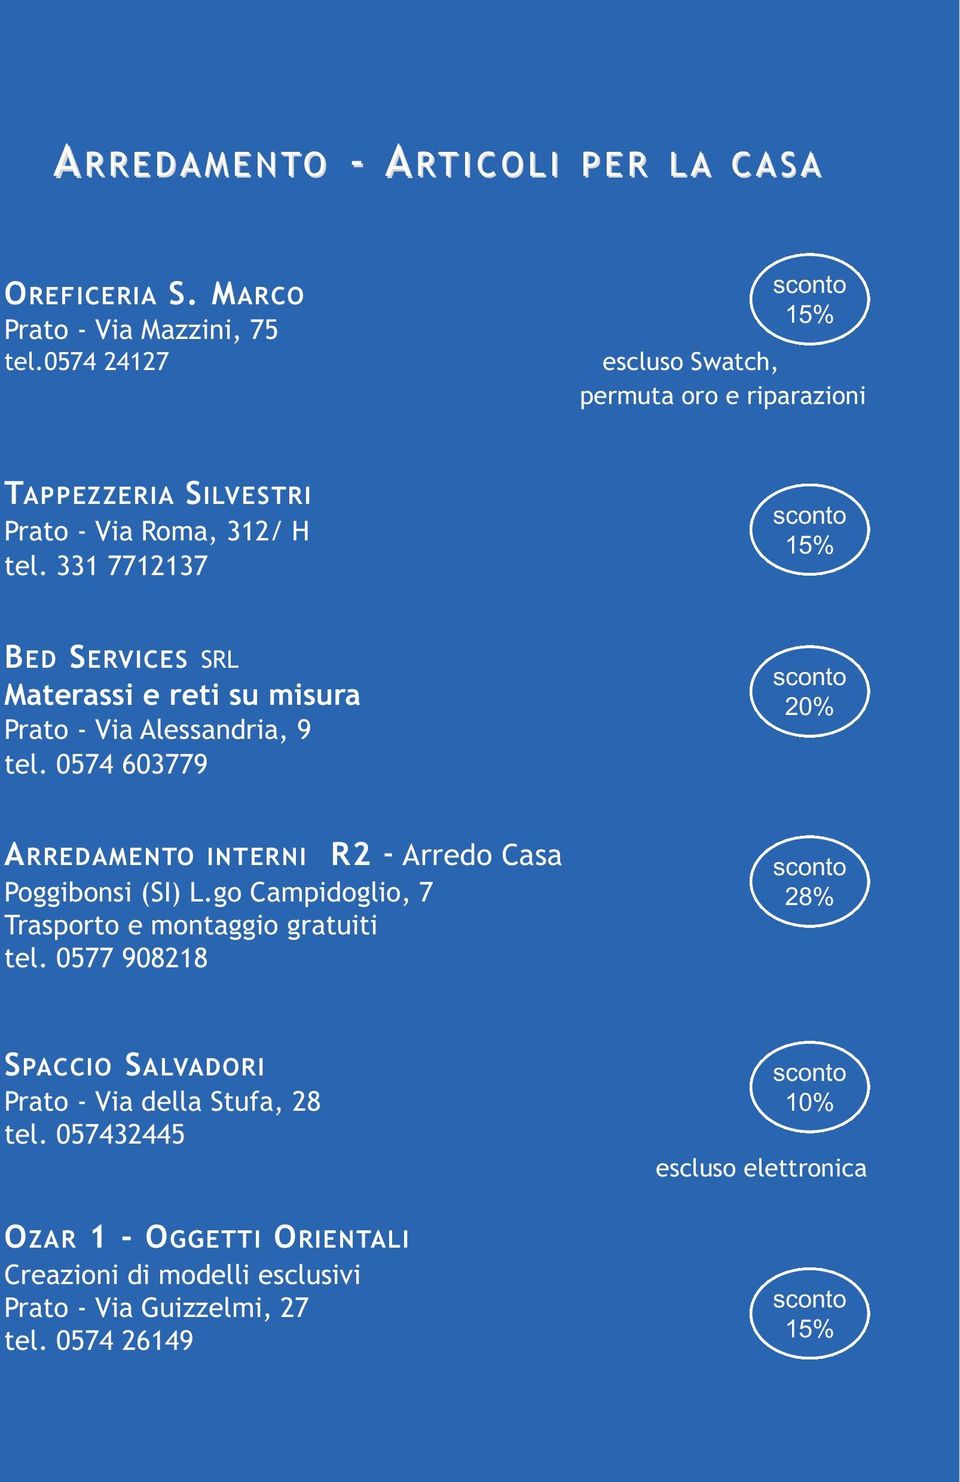 331 7712137 BED SERVICES SRL Materassi e reti su misura Prato - Via Alessandria, 9 tel. 0574 603779 ARREDAMENTO INTERNI Poggibonsi (SI) L.